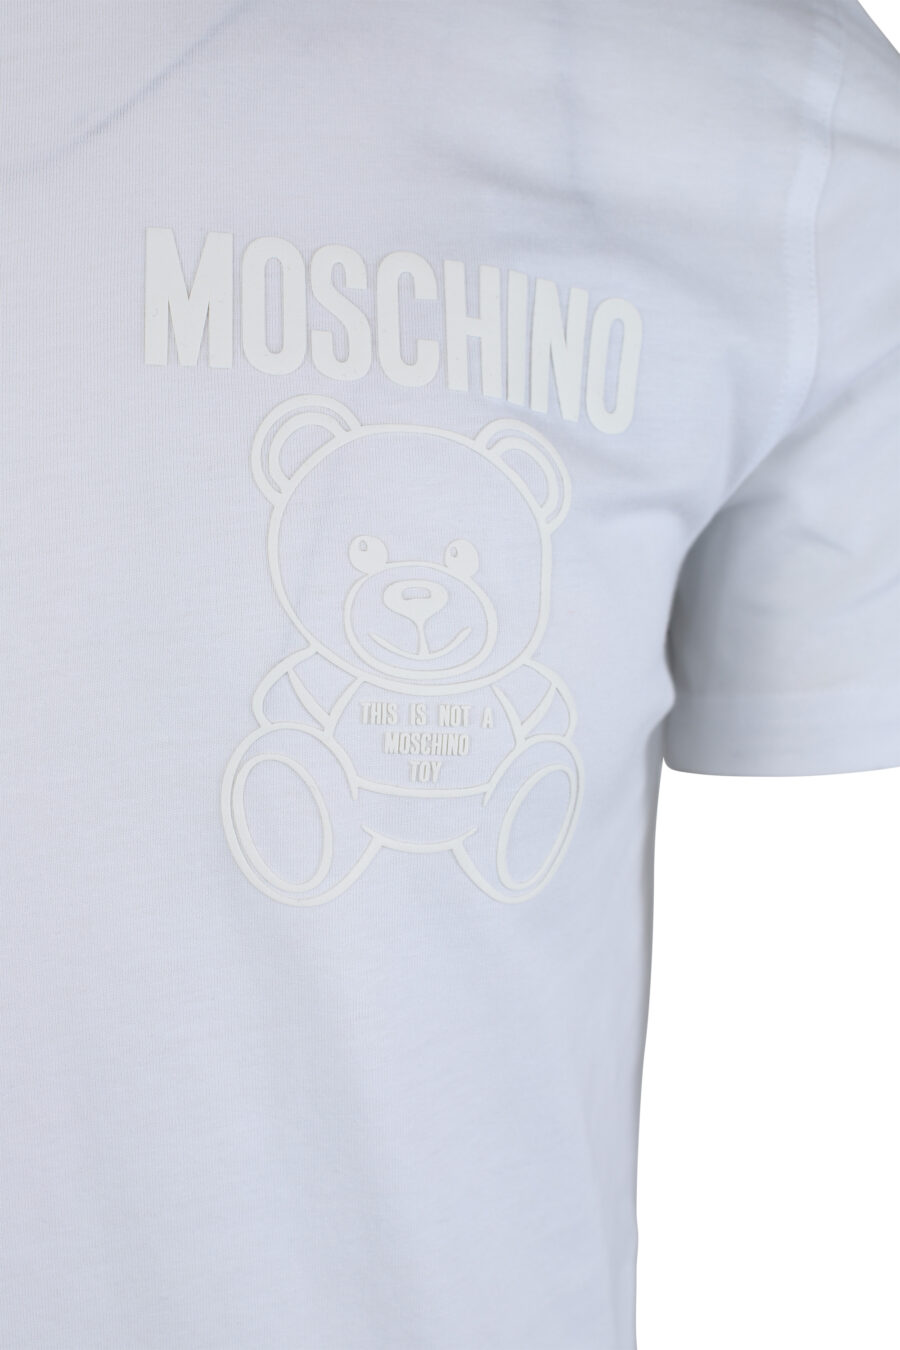 Weißes T-Shirt mit einfarbigem Bären-Minilogo - IMG 1652